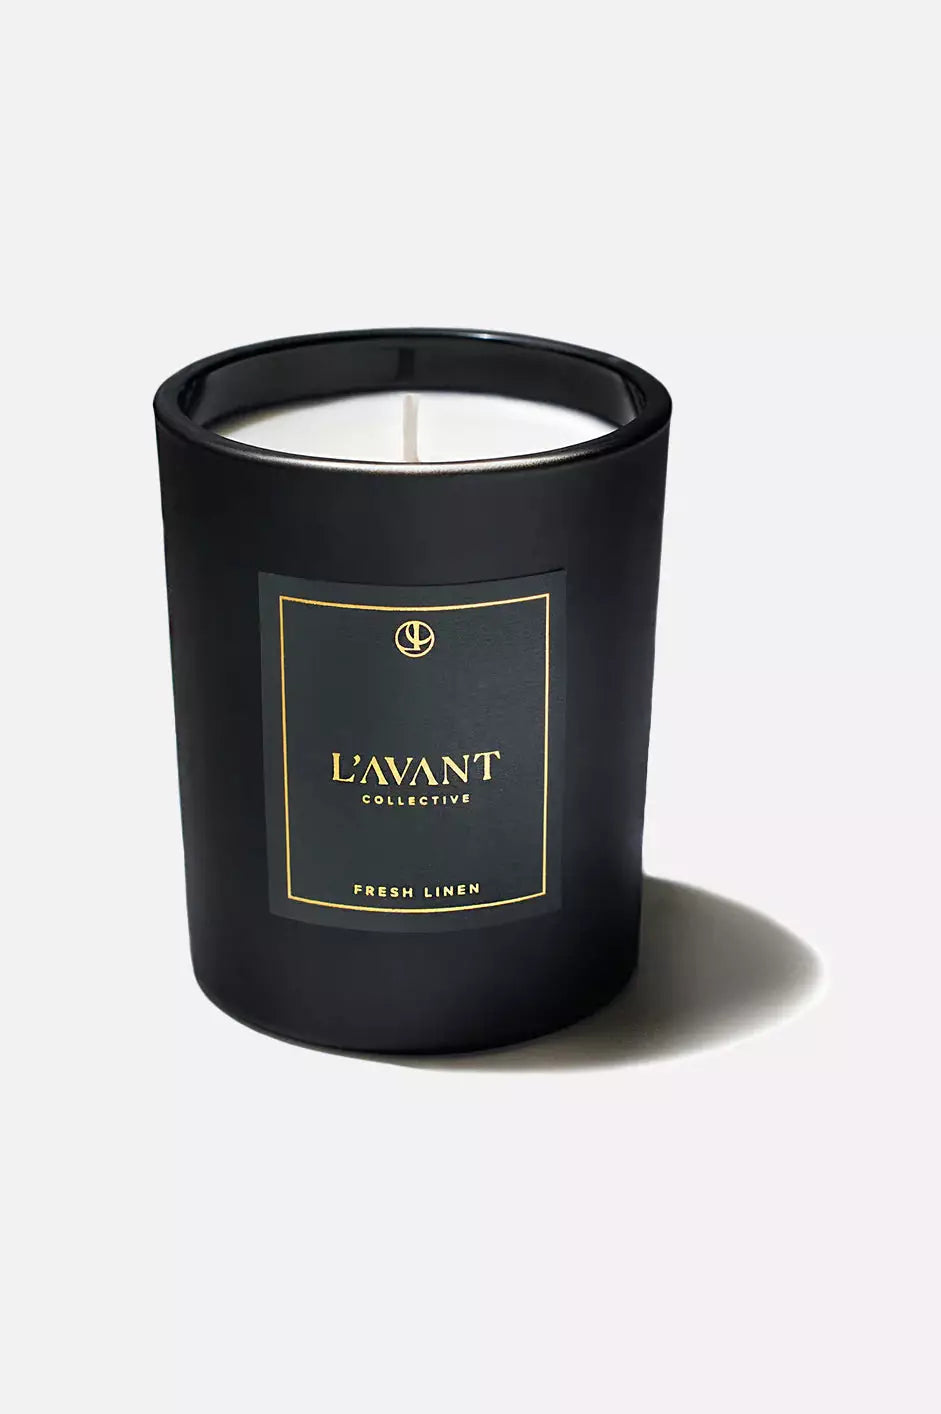 L'Avant Collective Fresh Linen Candle - 8 oz Black